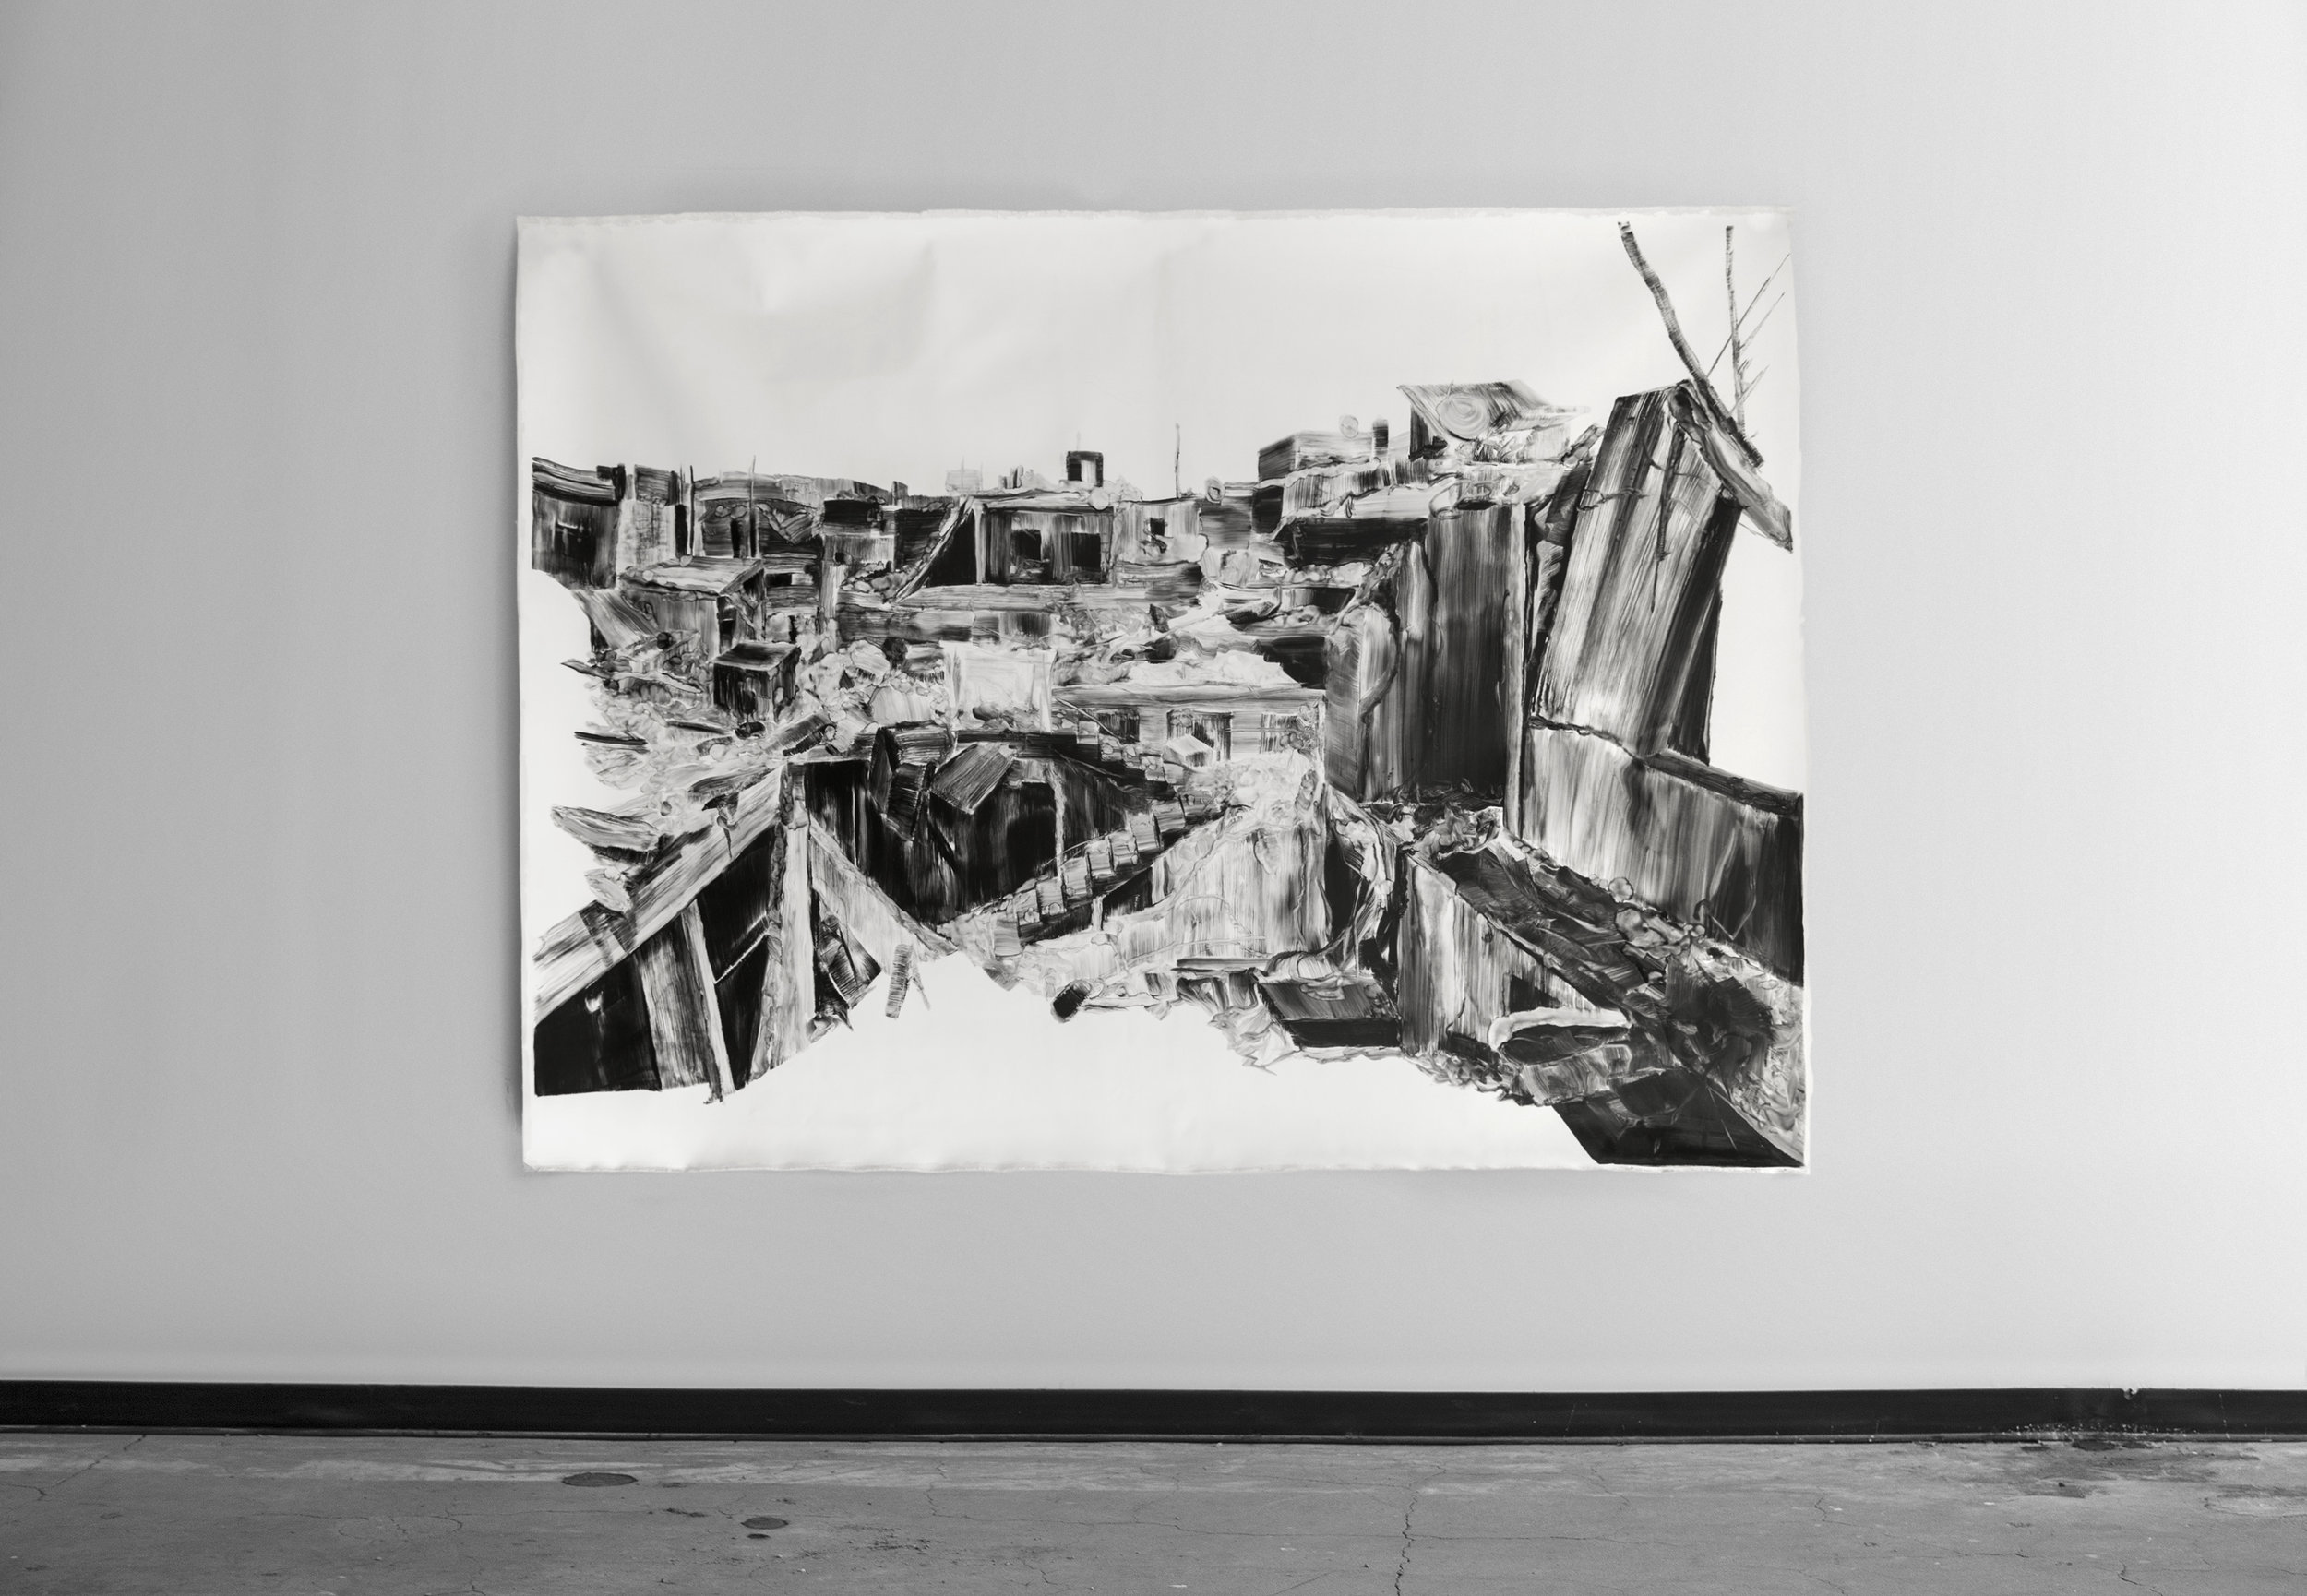  Un amas de ruines / A piles of ruins  Huile sur toile / Oil on canvas  85 X 65 in / 226 X 165 cm  2017    